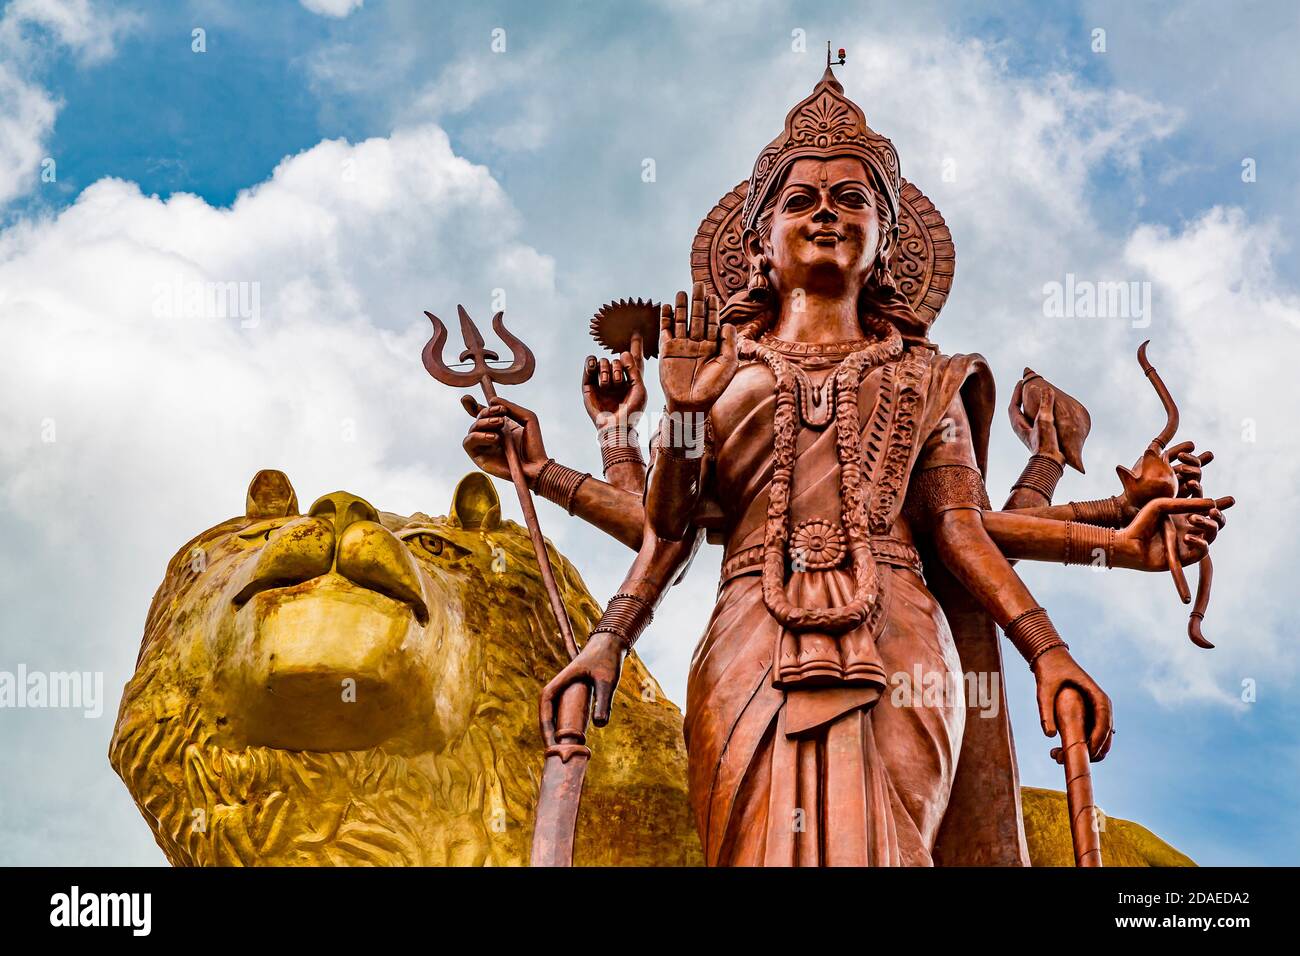 Estatua de Durga Maa Bhavani, 33 m, figura de la diosa hindú, lugar de peregrinación y templo hindú Señor Shiva, Gran Lago Santo Bassin, Ganga Talao, Mauricio, África, Océano Índico Foto de stock